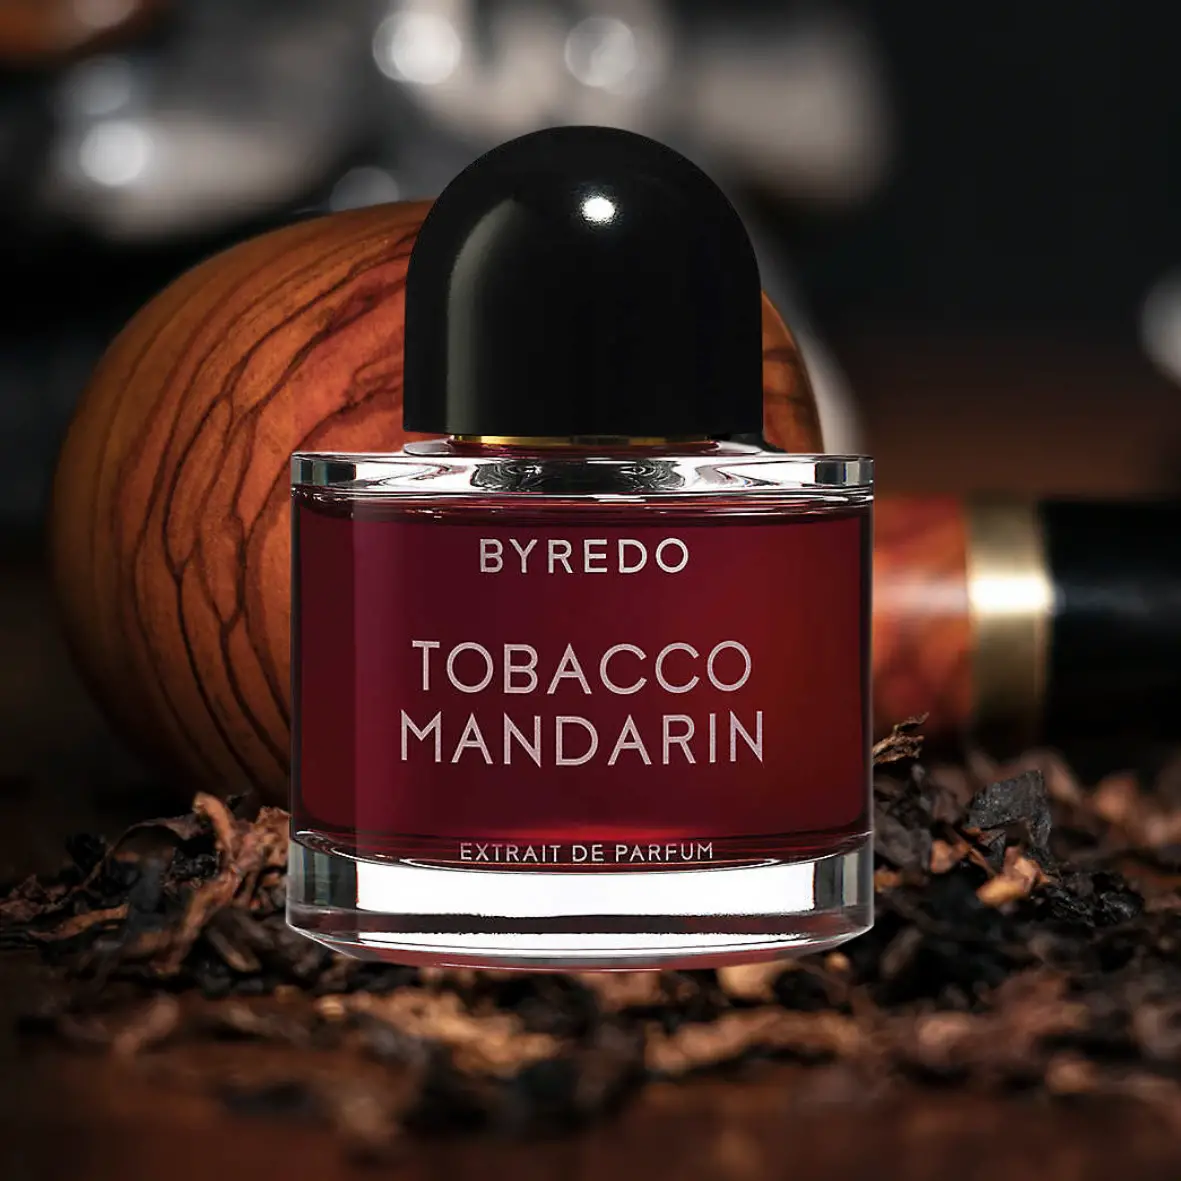 Byredo Tobacco Mandarin
Best Smoky Tobacco Fragrances